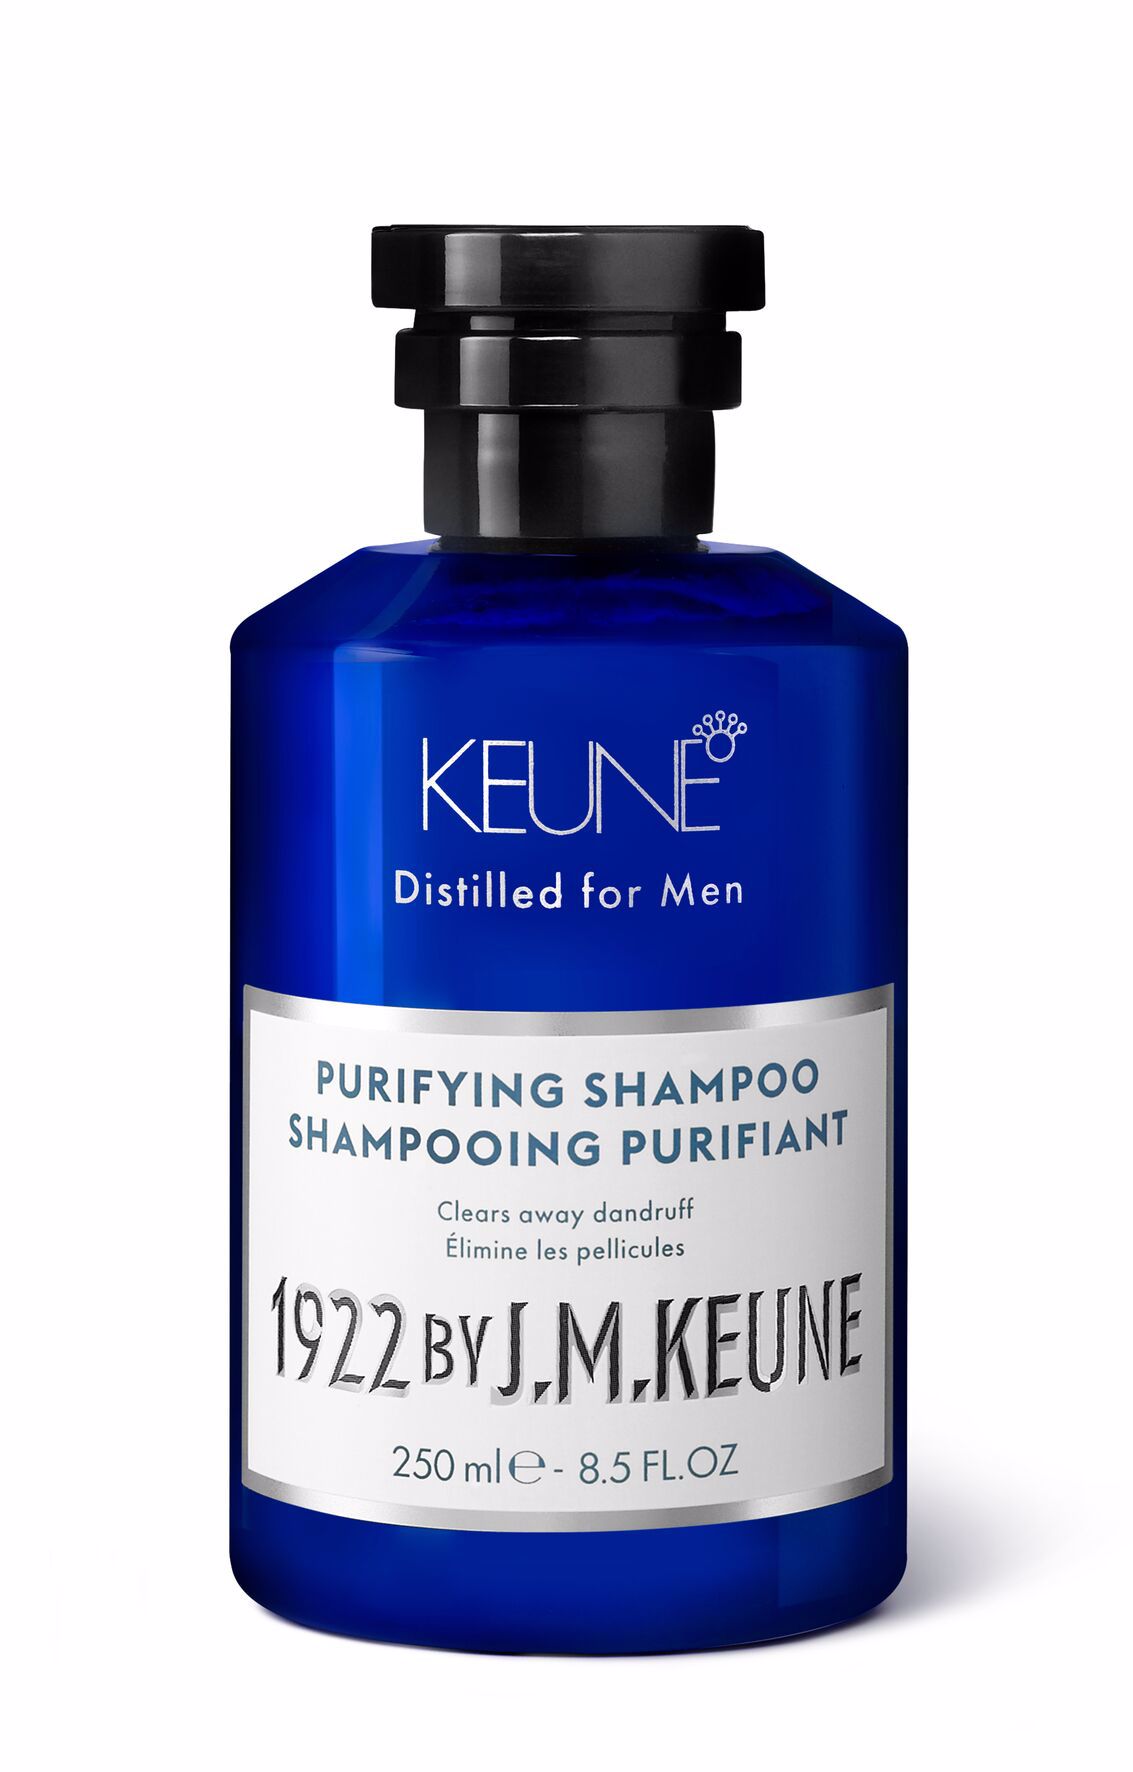 Shampooing efficace contre les cheveux gras pour hommes : sans pellicules grâce au pyrithione de zinc et renforcé avec de la créatine. Découvrez-en davantage sur notre Shampooing Purifiant 1922.